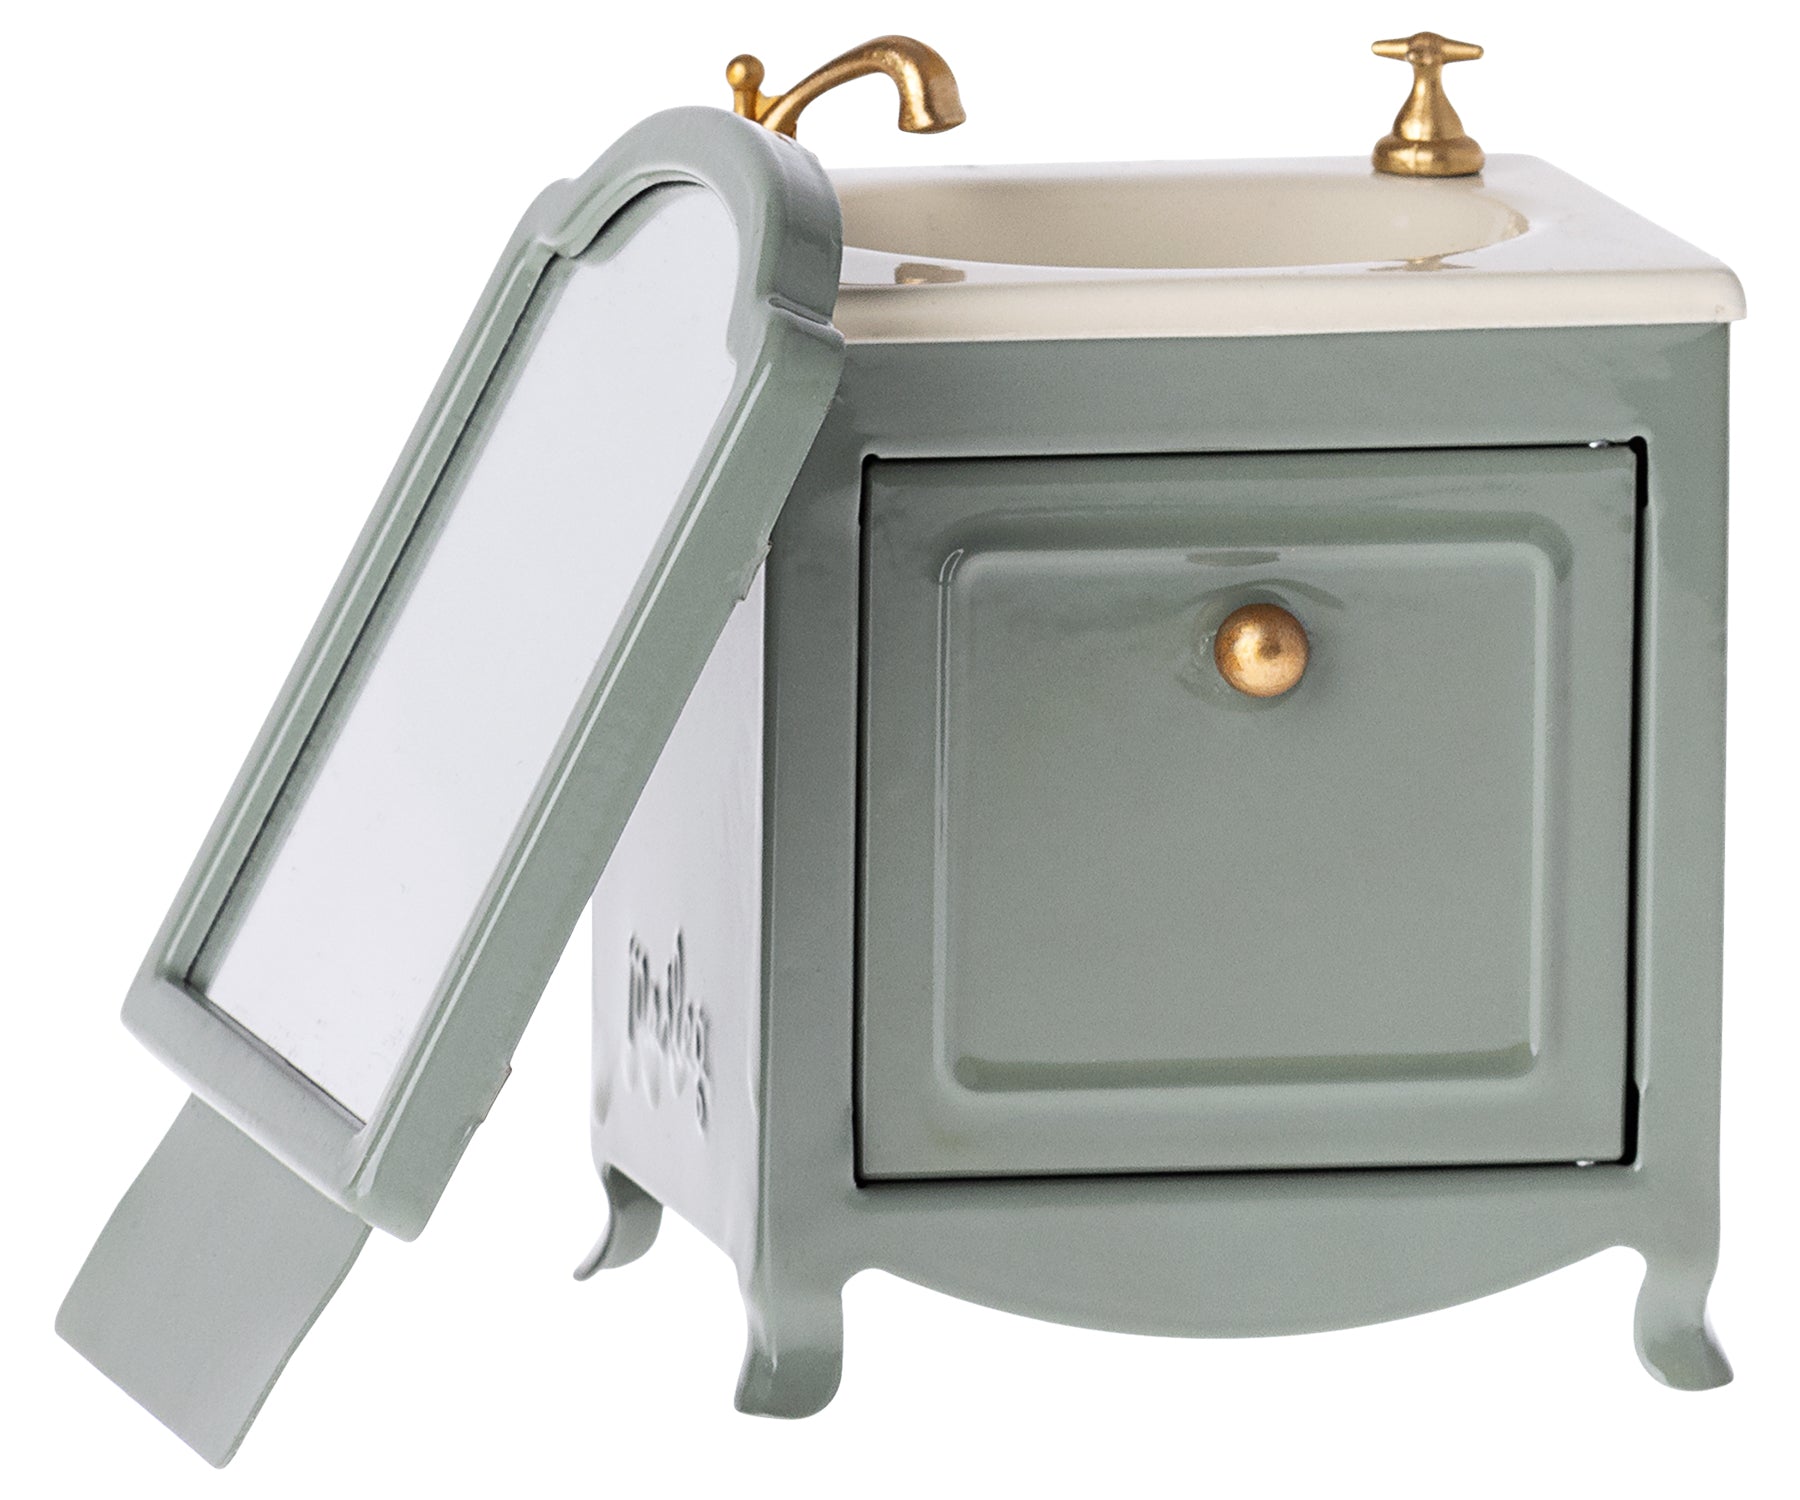 Maileg Miniature Mouse Sink Dresser with Mirror – Dark Mint